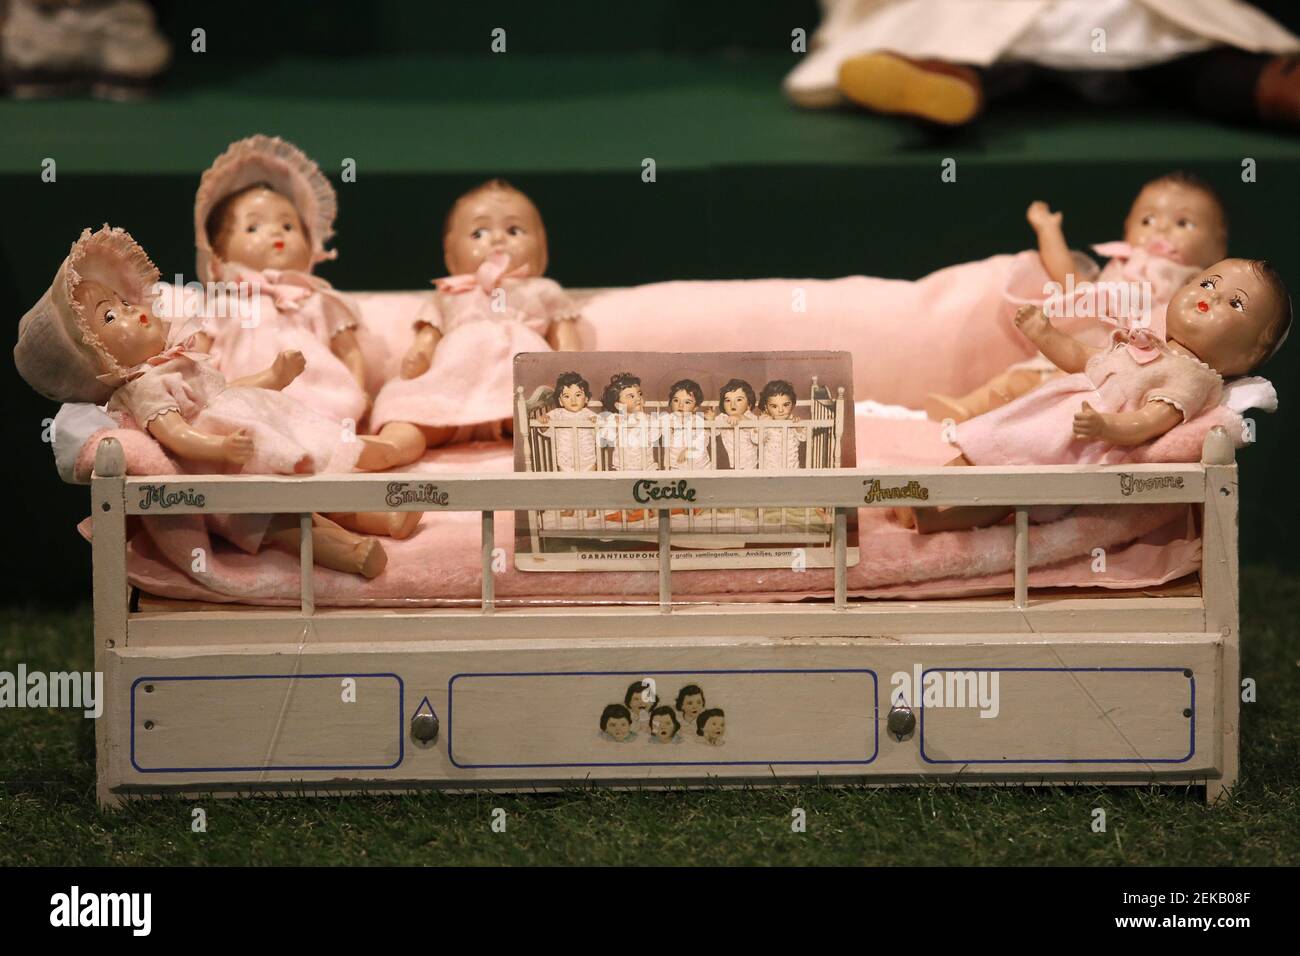 Las muñecas de Dionne Quints, hechas por la Compañía Alexander Doll,  inspiradas en la verdadera historia de los 5 gemelos monozigóticos Annette,  Cecile, Emile, Marie e Yvonne Dionne, nacido el 28 de